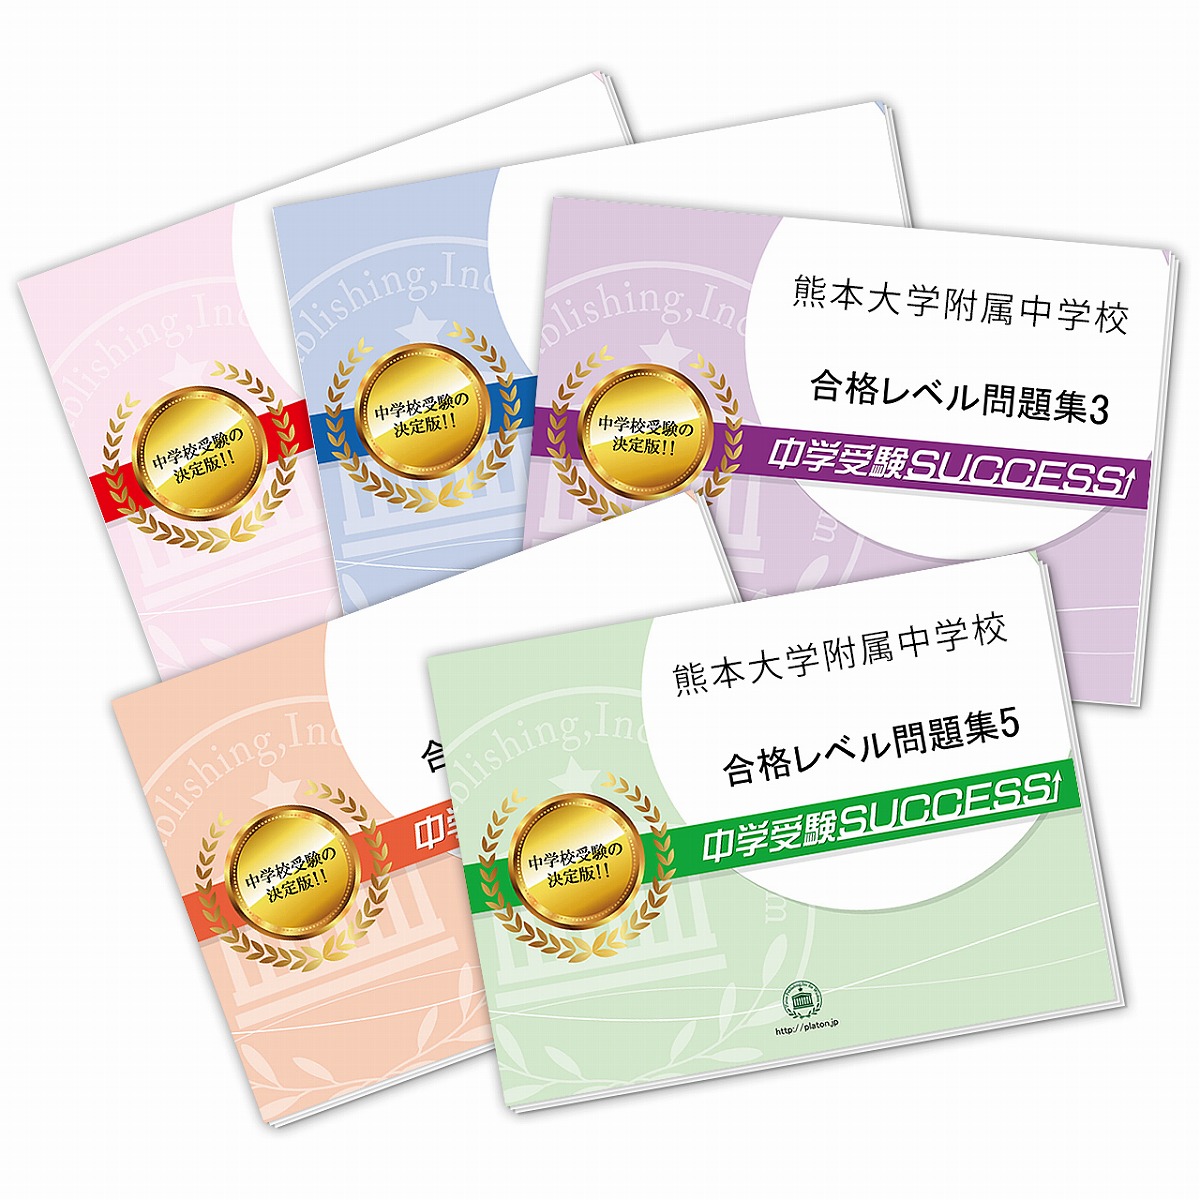 捧呈 送料 代引手数料無料 熊本大学附属中学校 直前対策合格セット ディスカウント 5冊